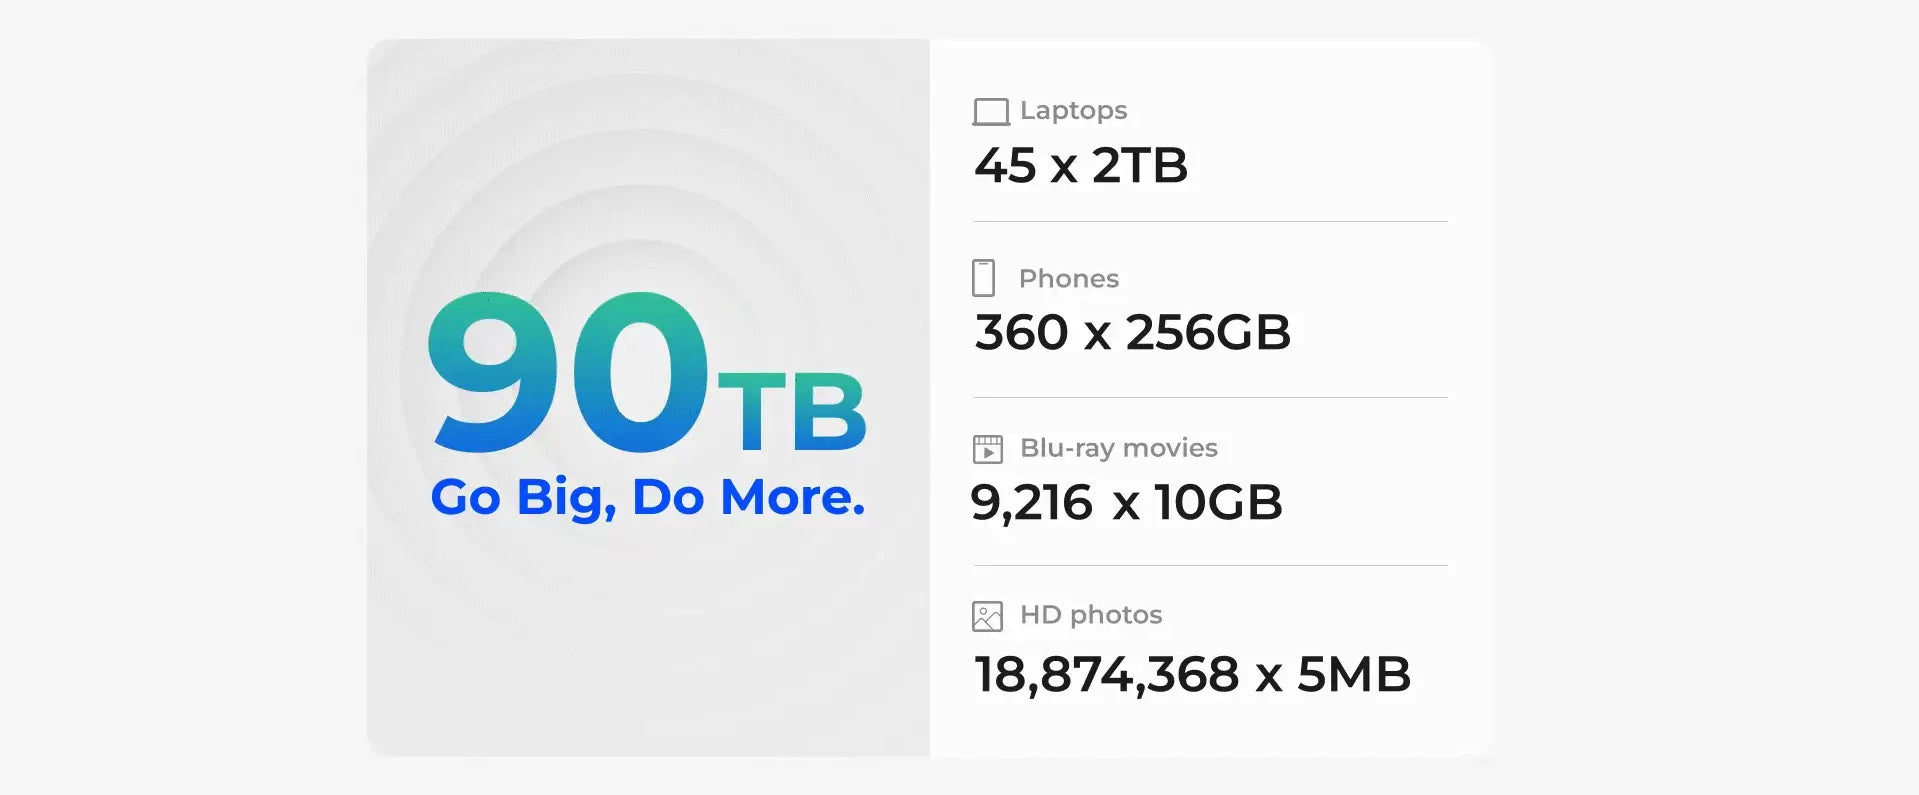 90 TB= 360x256 GB phones